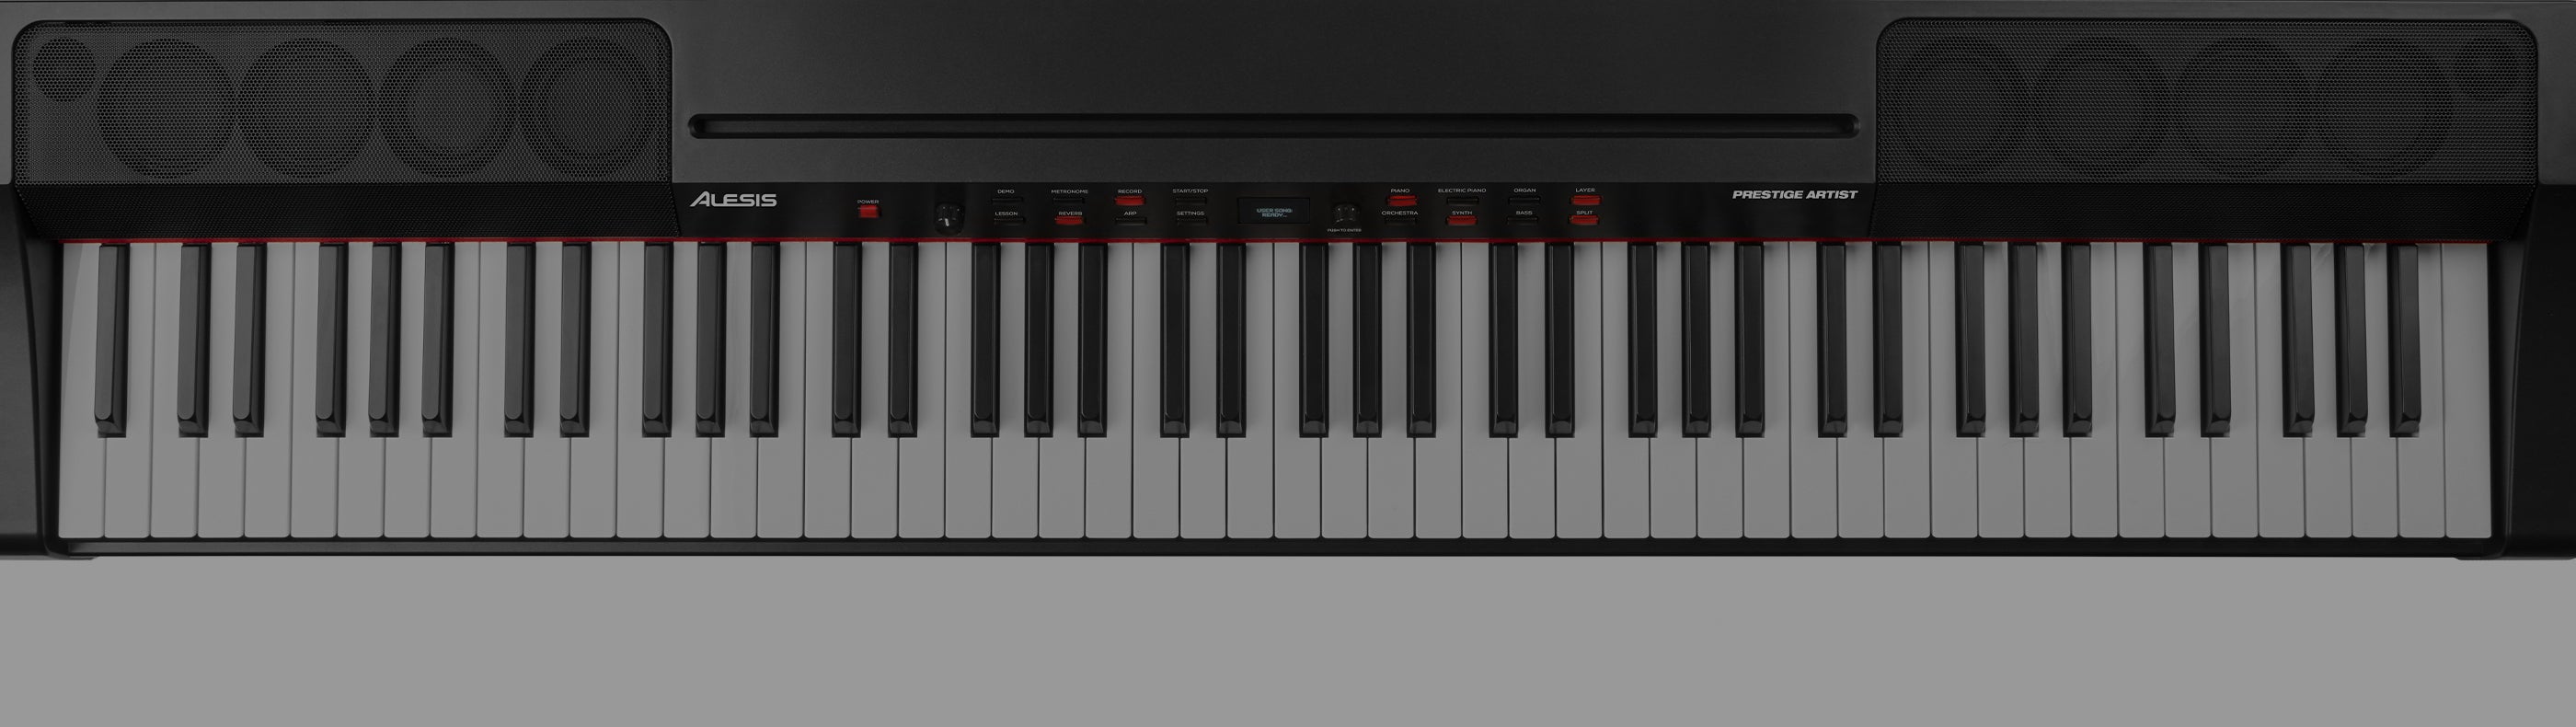 Alesis Digital Pianos